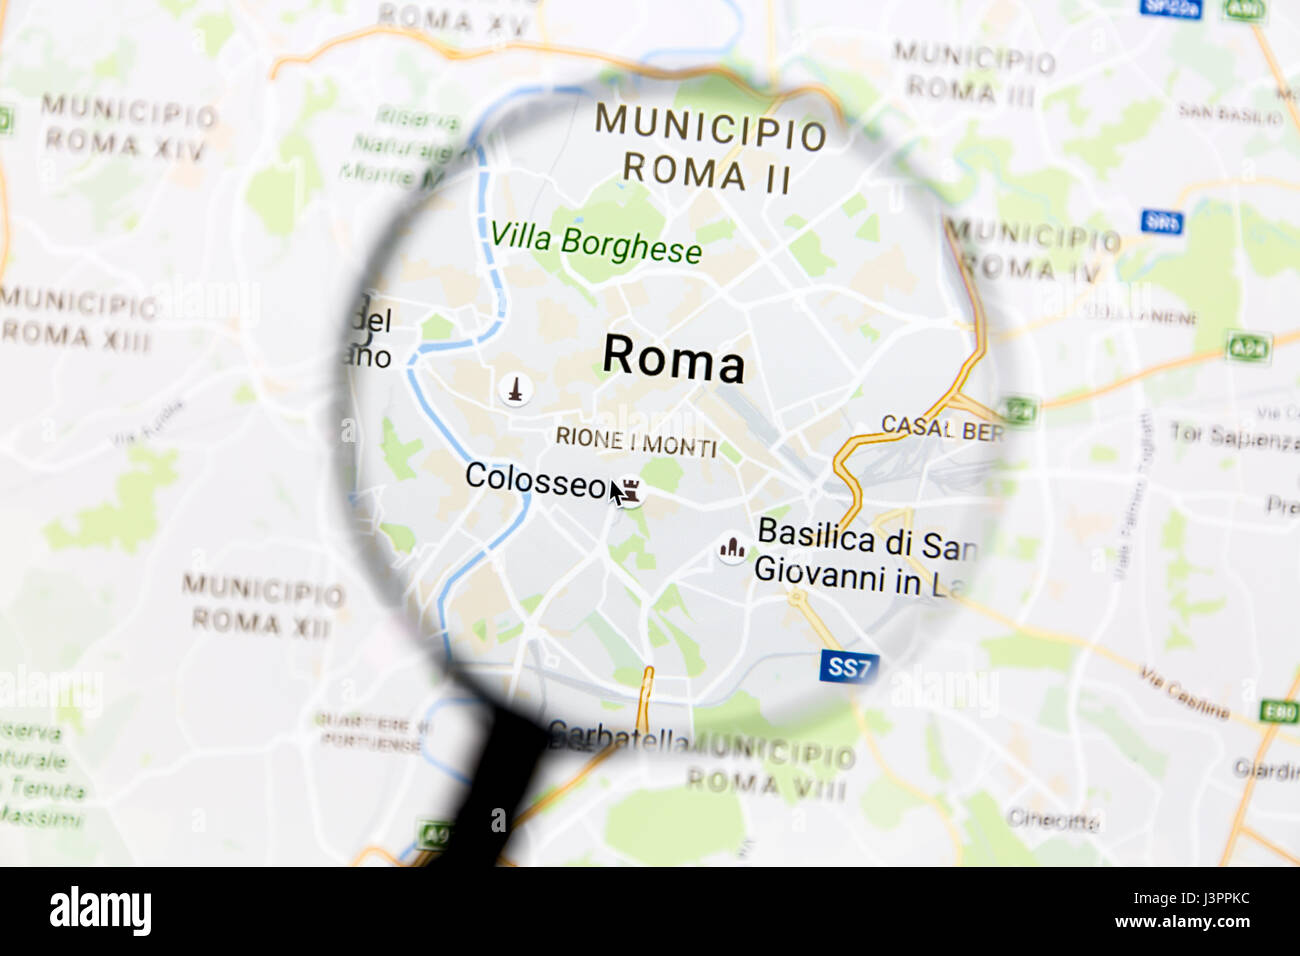 Roma en Google Maps bajo una lupa. Roma es la ciudad capital de Italia Foto de stock